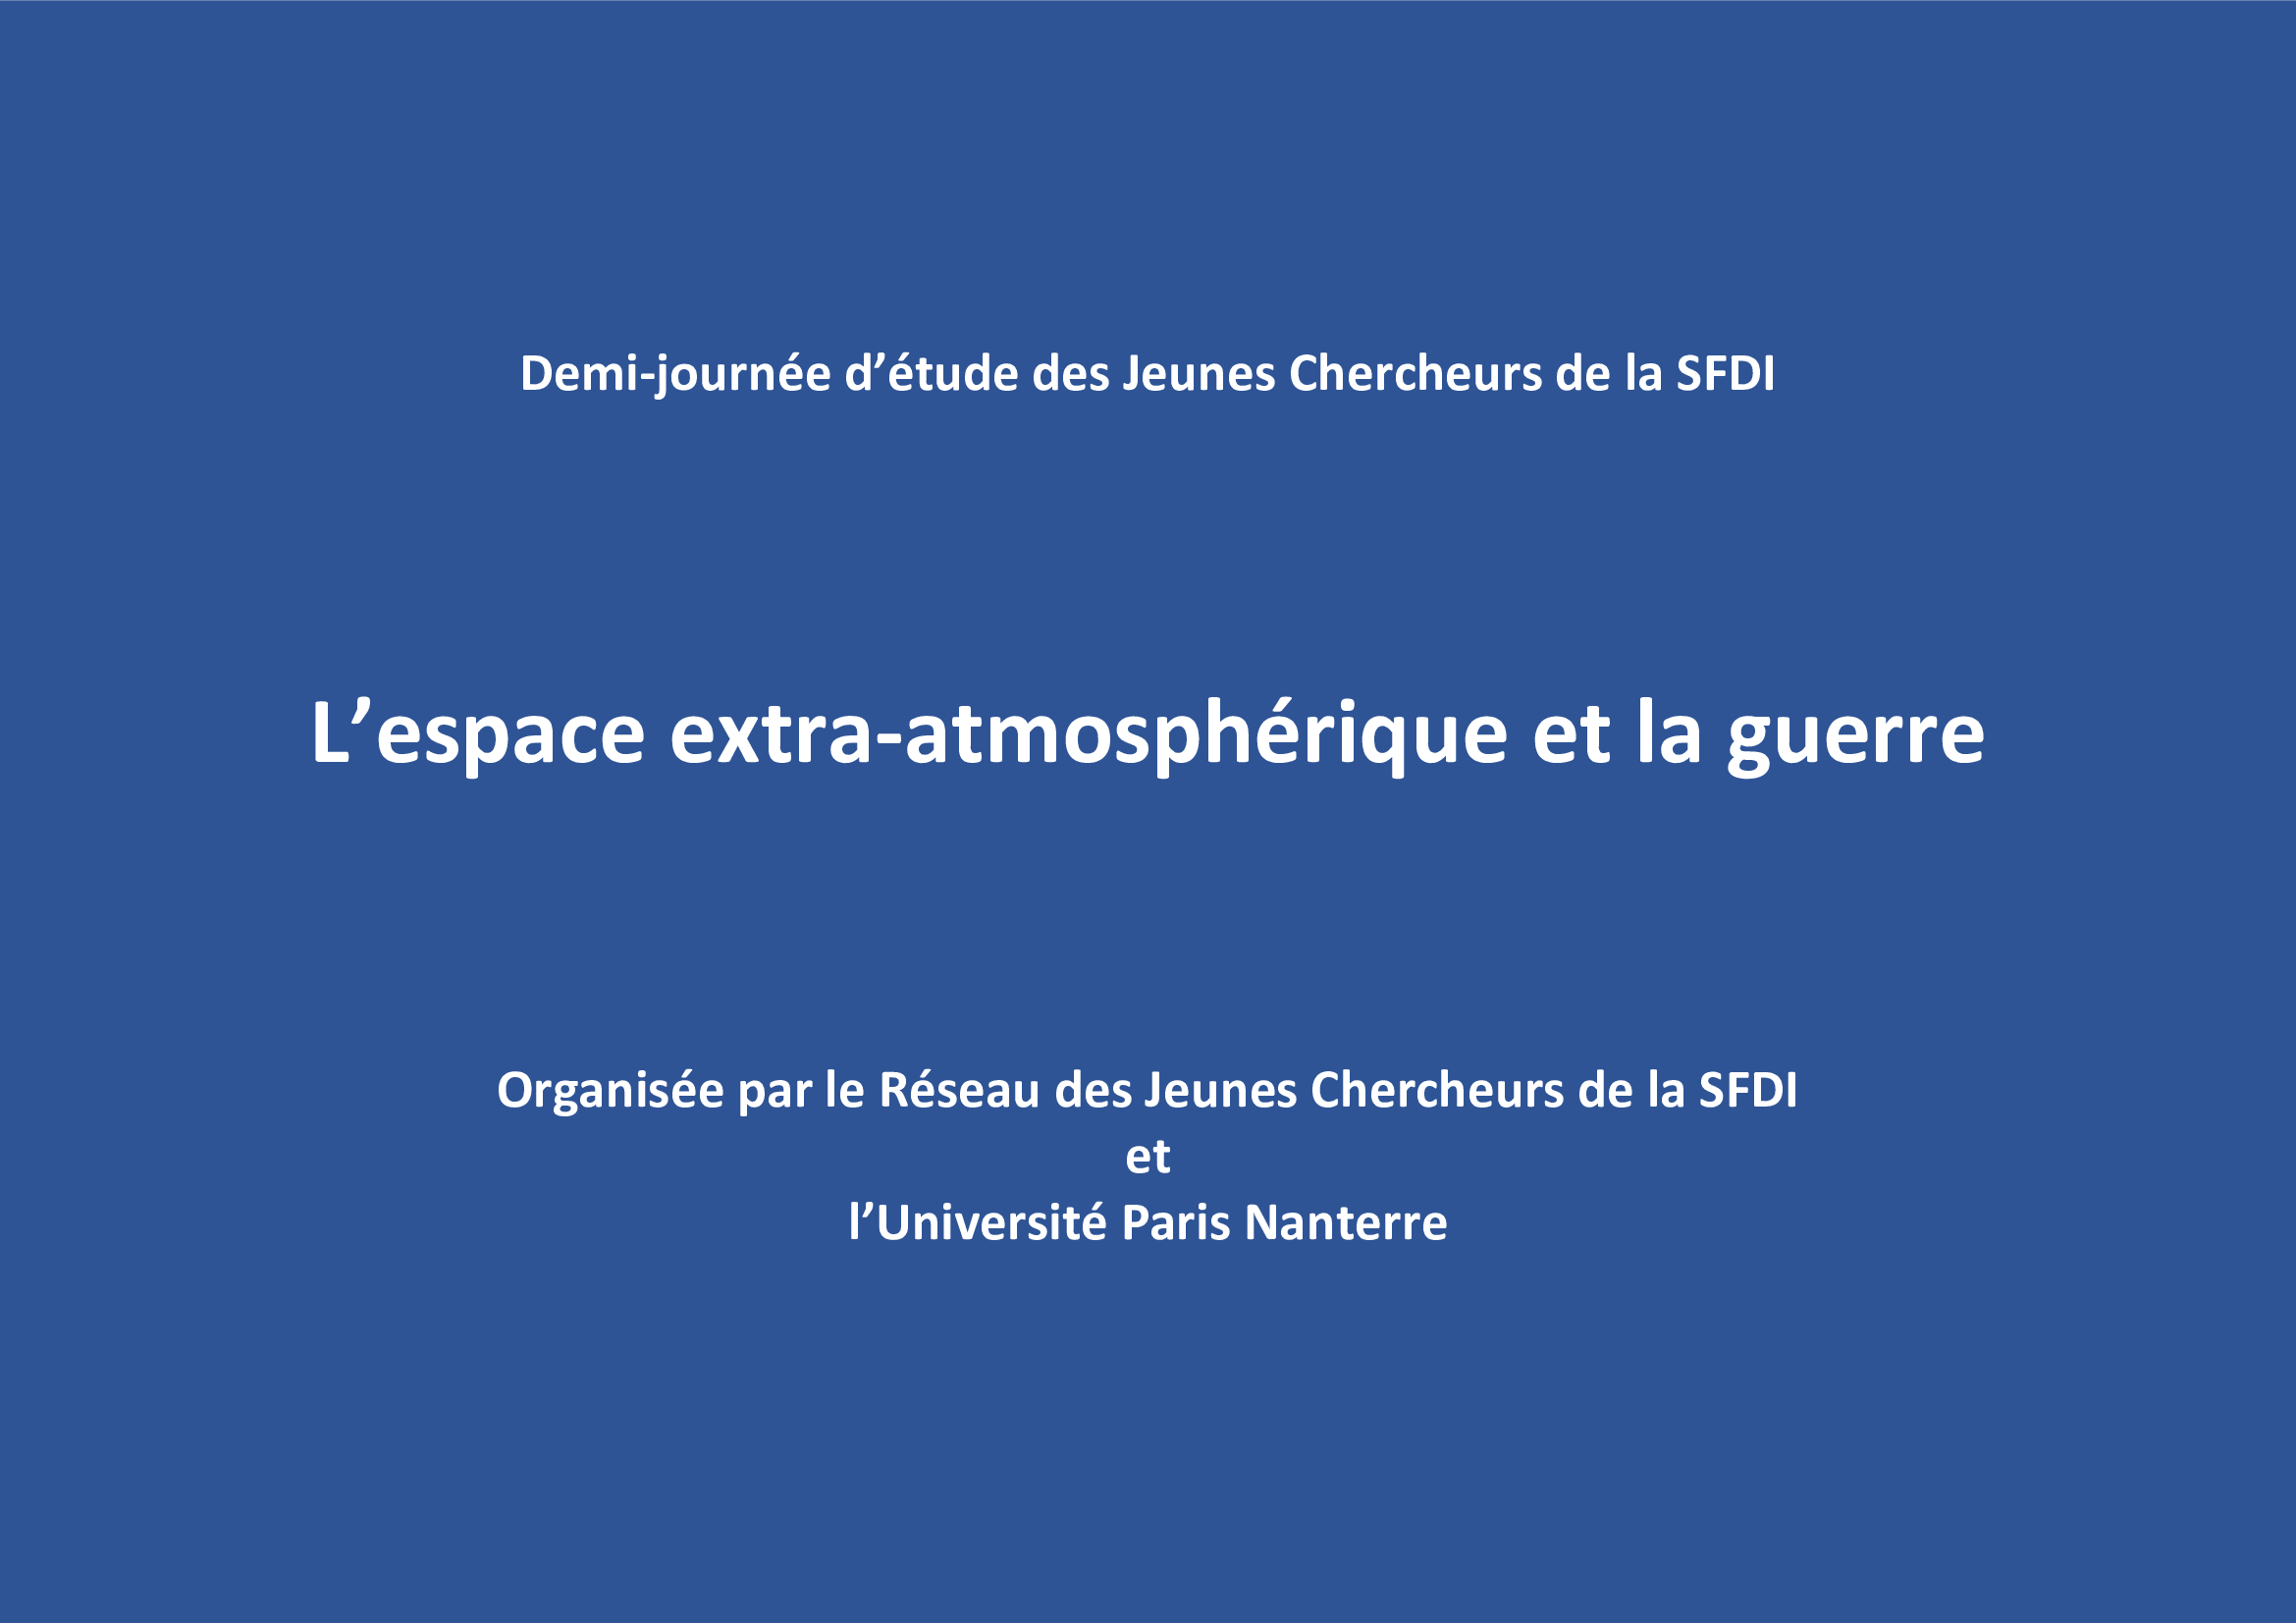 "Cyberguerre et espace extra-atmosphérique", par D. Miramont